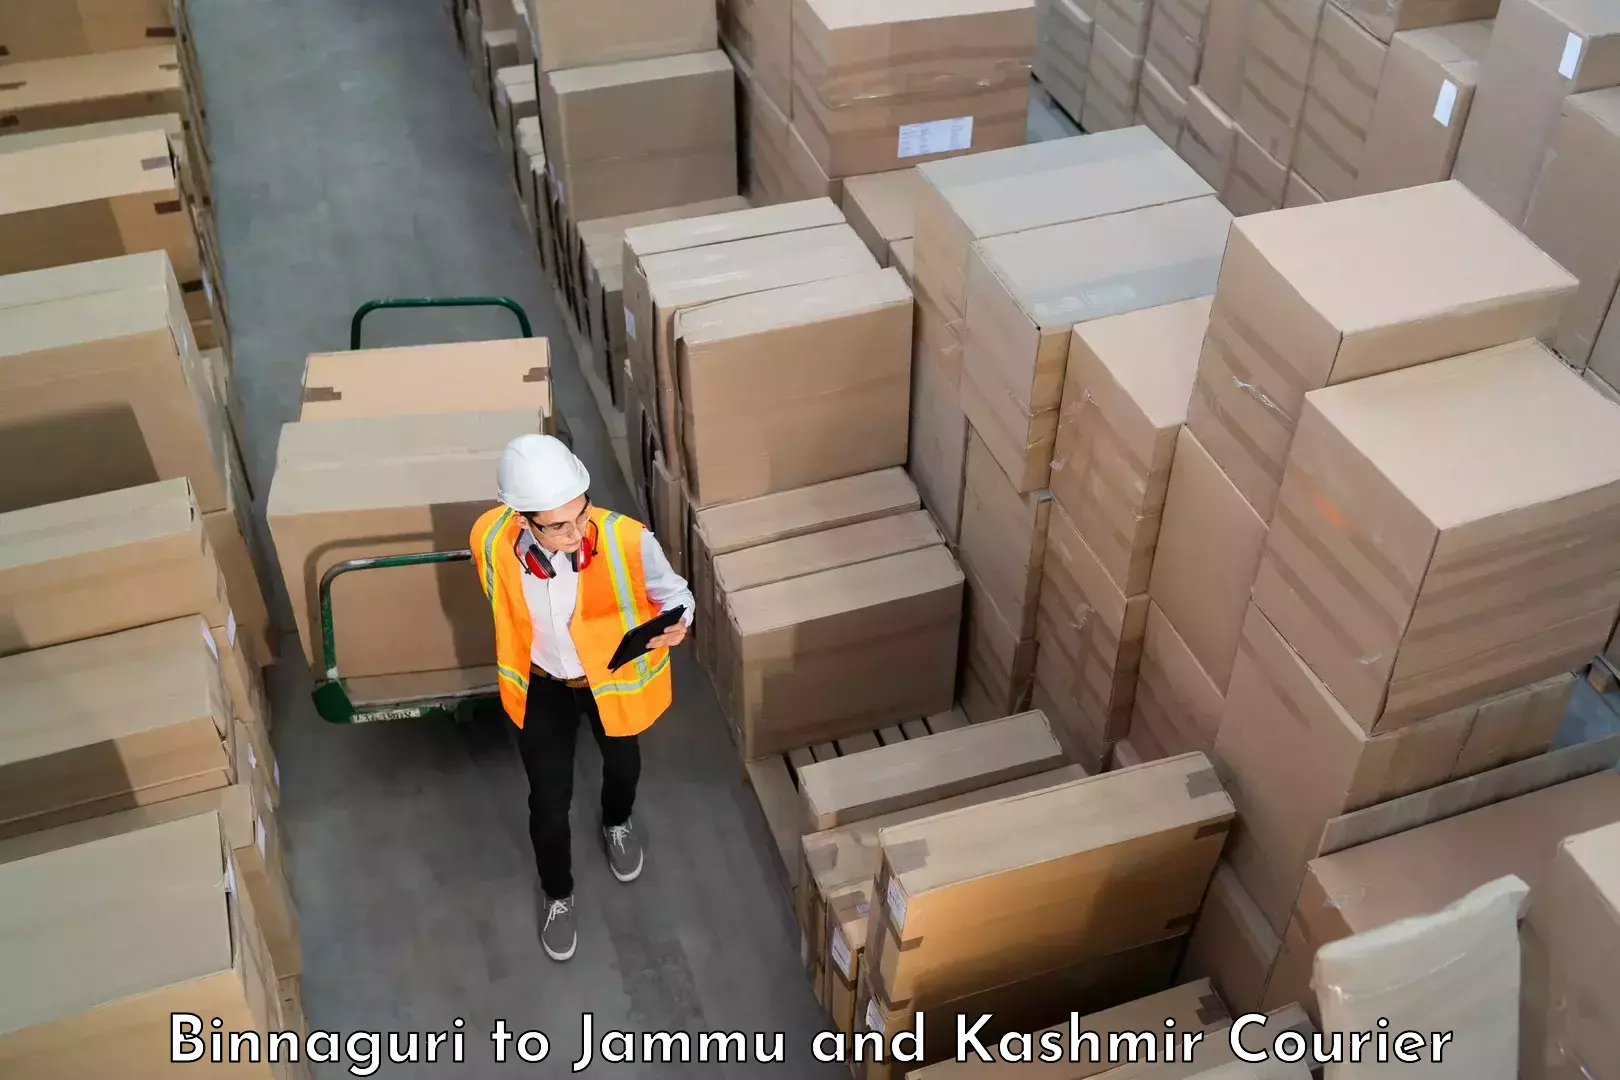 Hassle-free luggage shipping in Binnaguri to Jammu and Kashmir